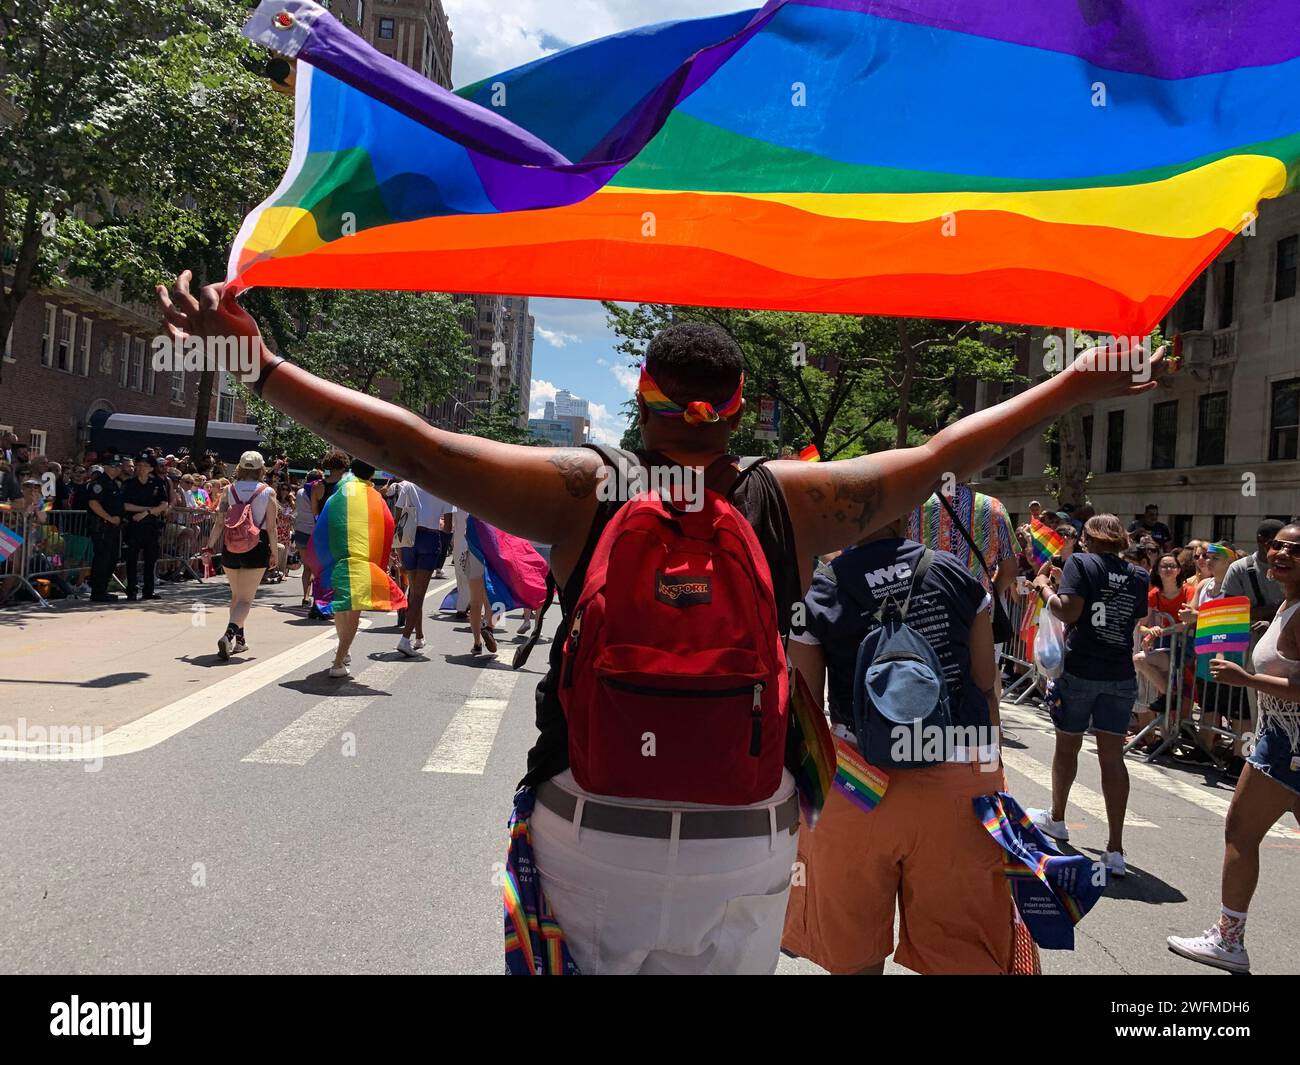 Un jeune homme hisse le drapeau arc-en-ciel de la fierté au-dessus de sa tête alors qu'il marche dans la parade de la fierté de New York célébrant la communauté LBGT Banque D'Images